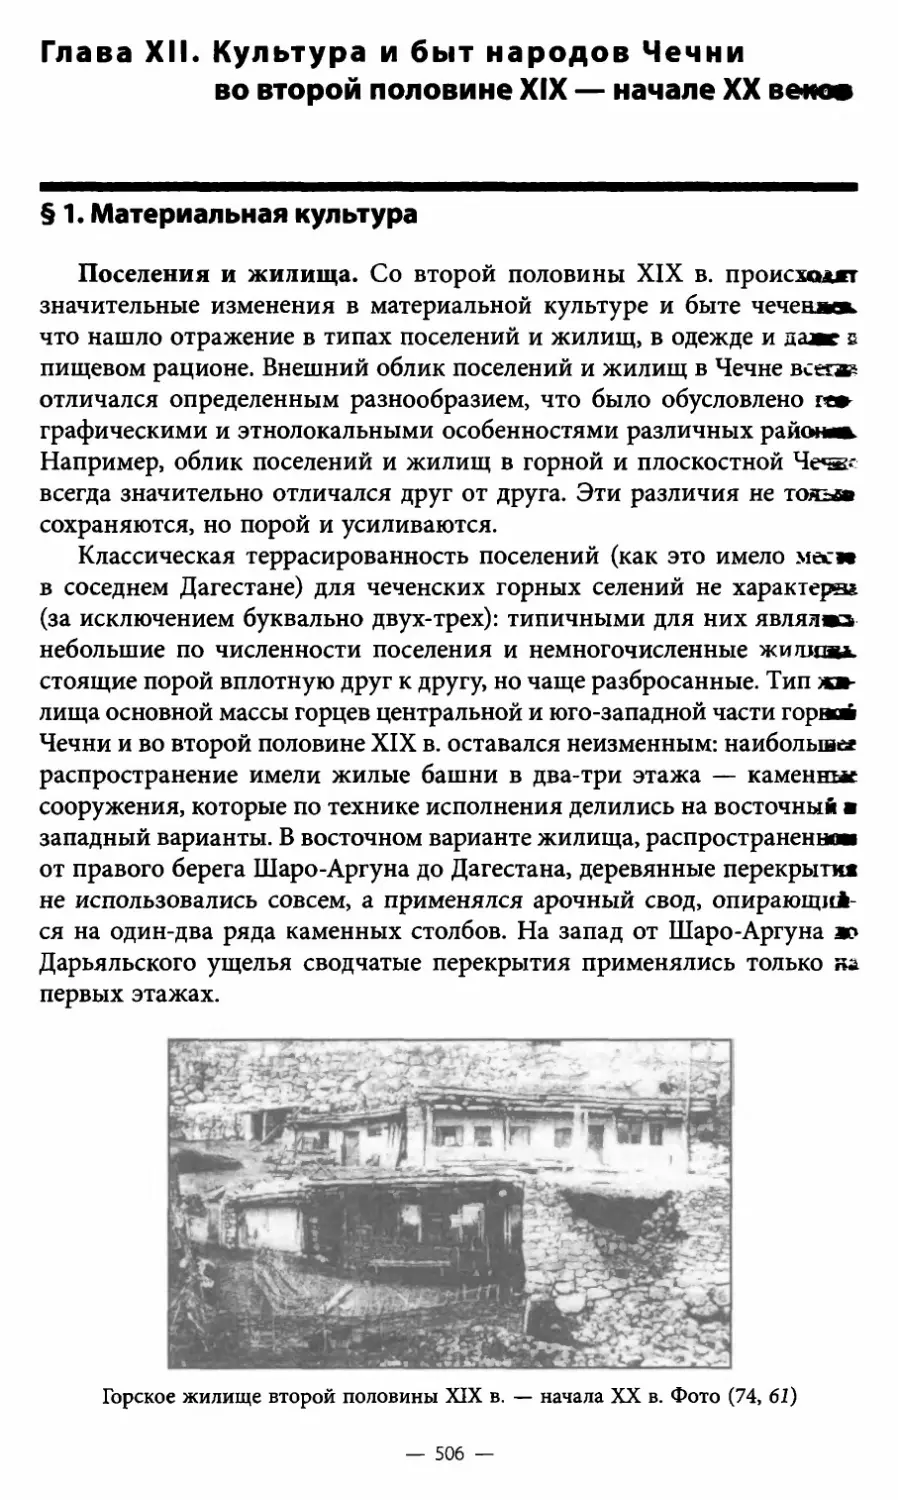 Глава XII. Культура и быт народов Чечни во второй половине XIX — начале XX веков